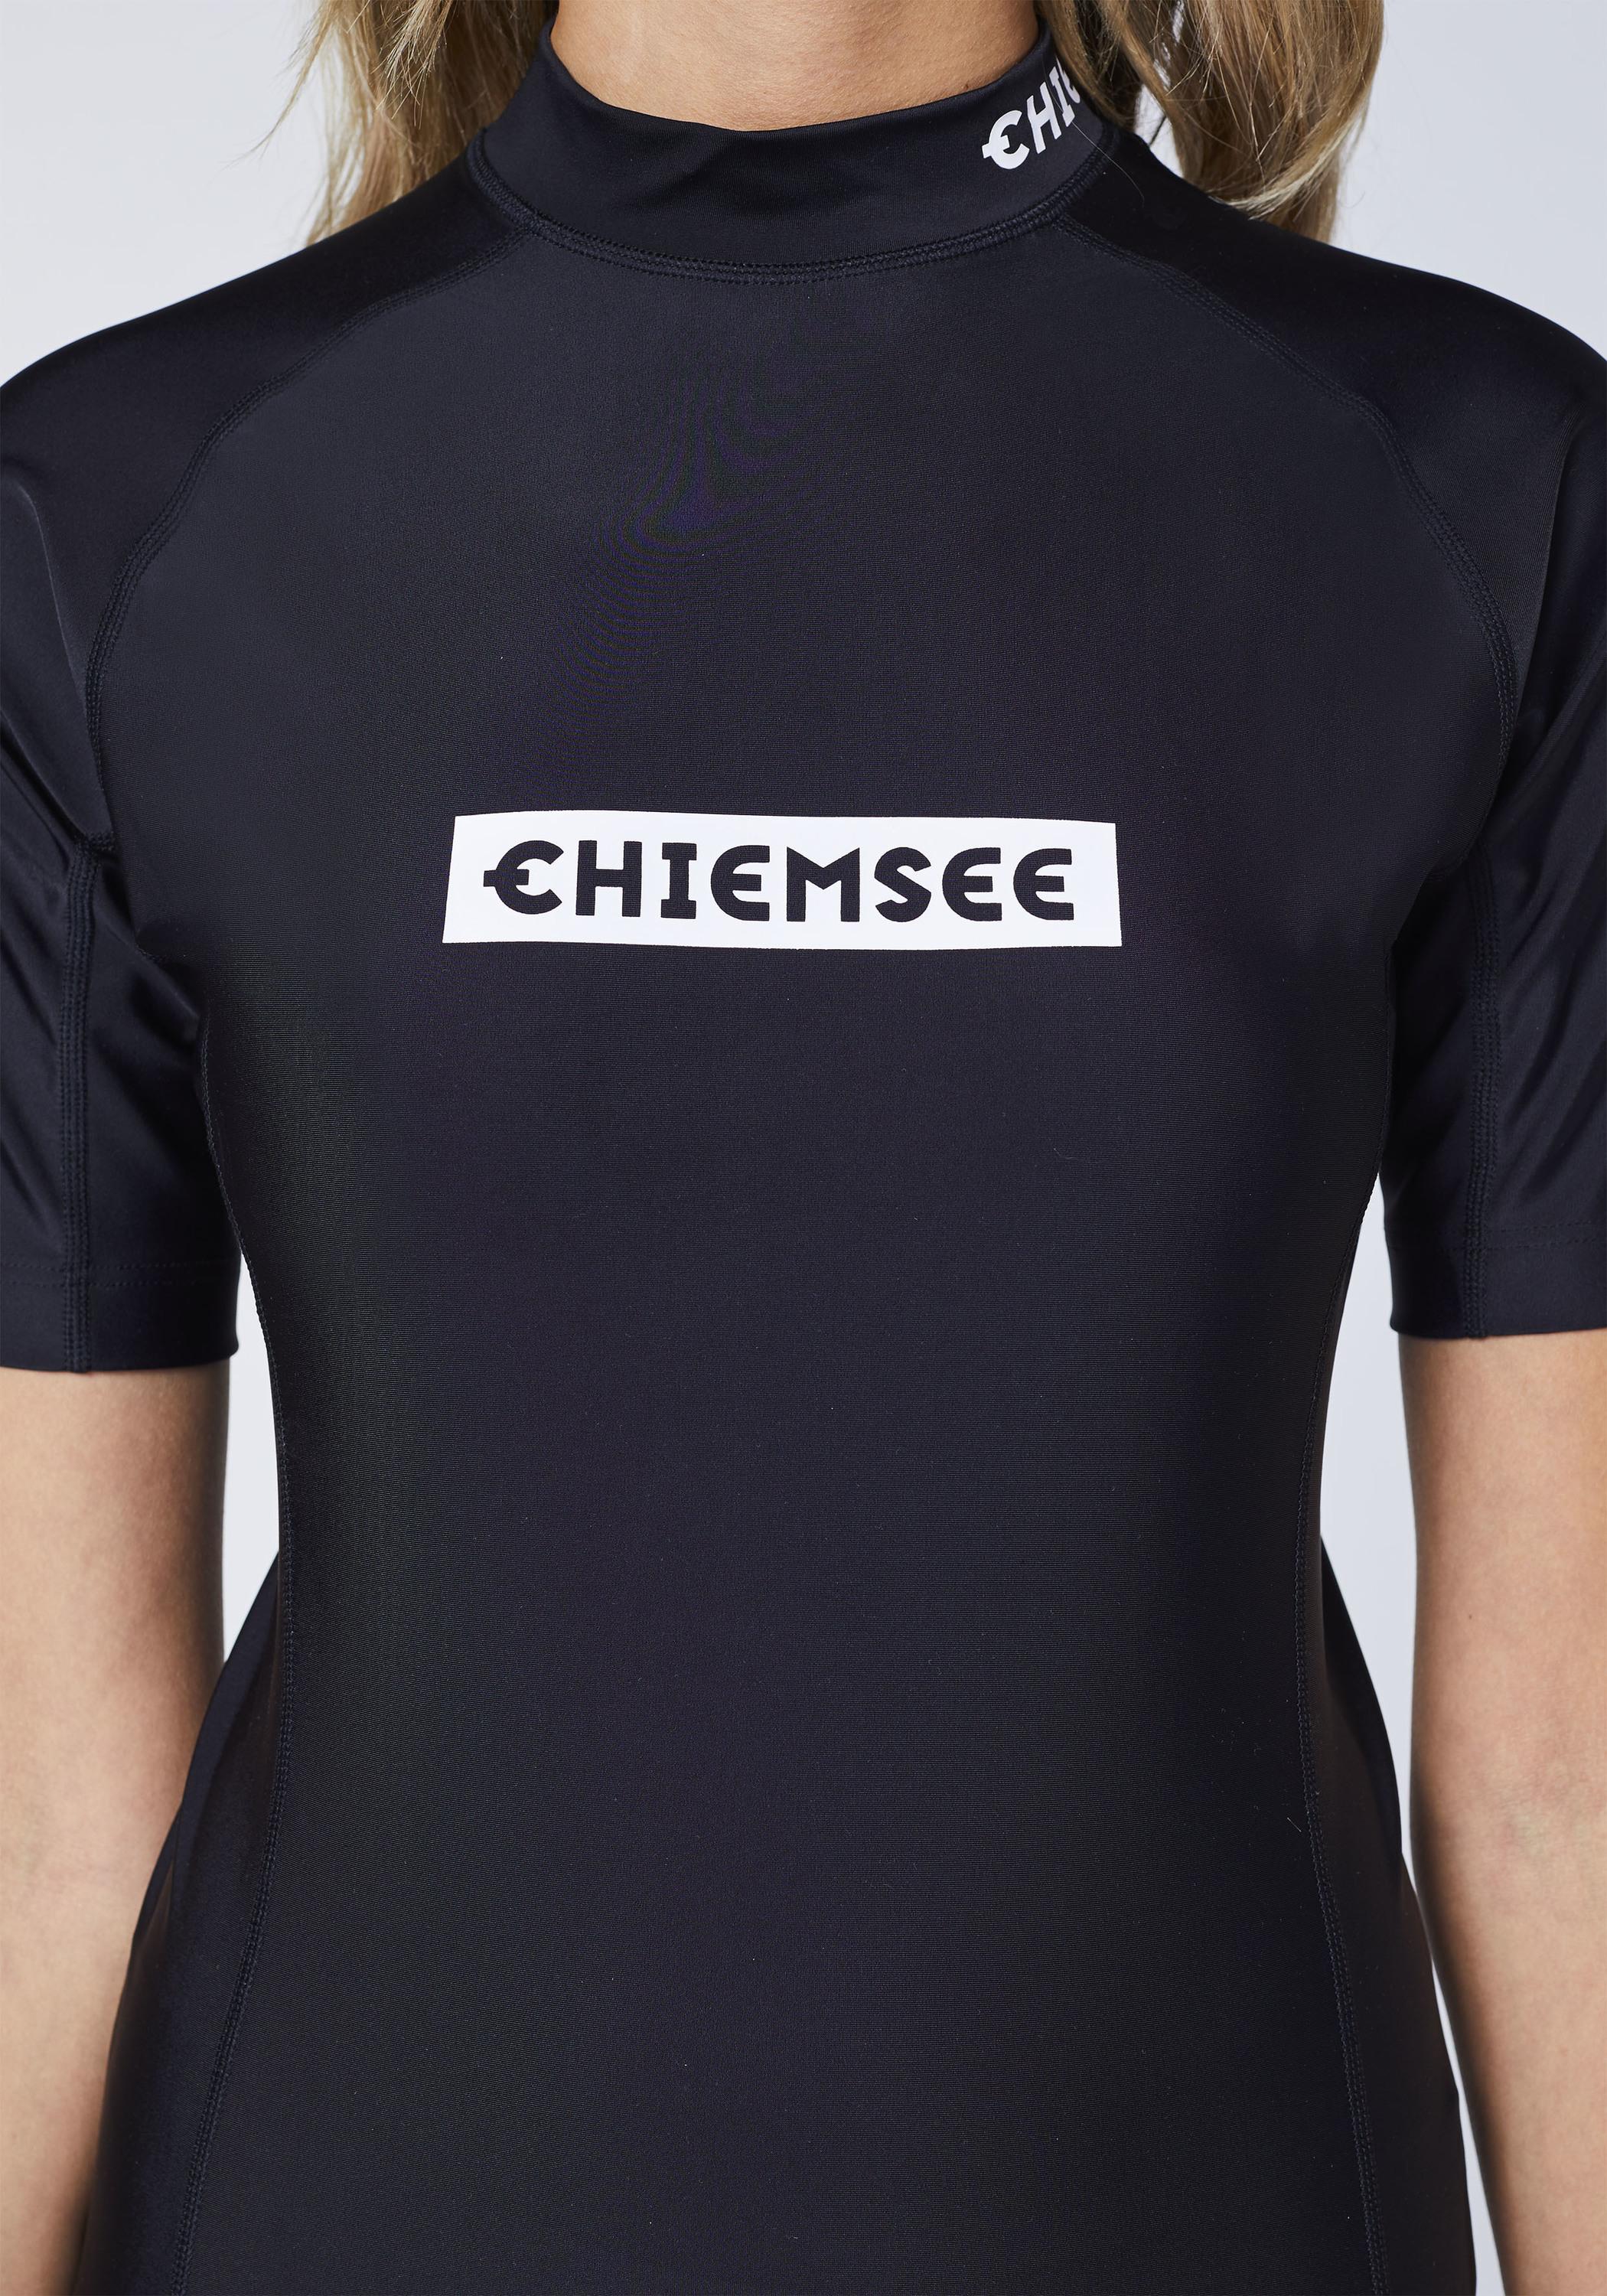 Chiemsee Badeshirt Surf Shirt Deep SportScheck Shop Black im kaufen von new Online